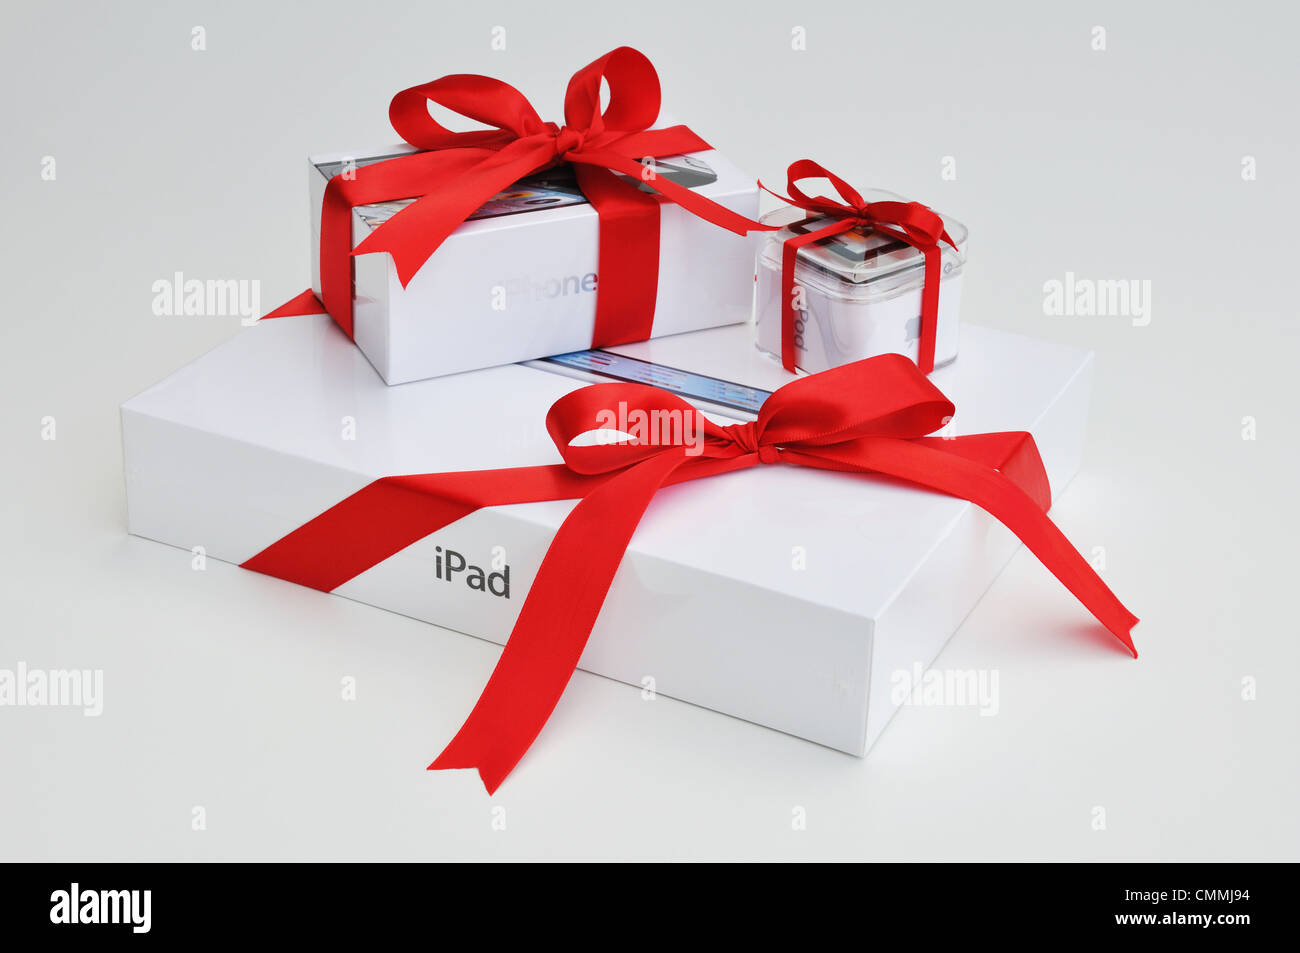 El regalo perfecto: el iPod Nano, iPhone & iPad Fotografía de stock - Alamy